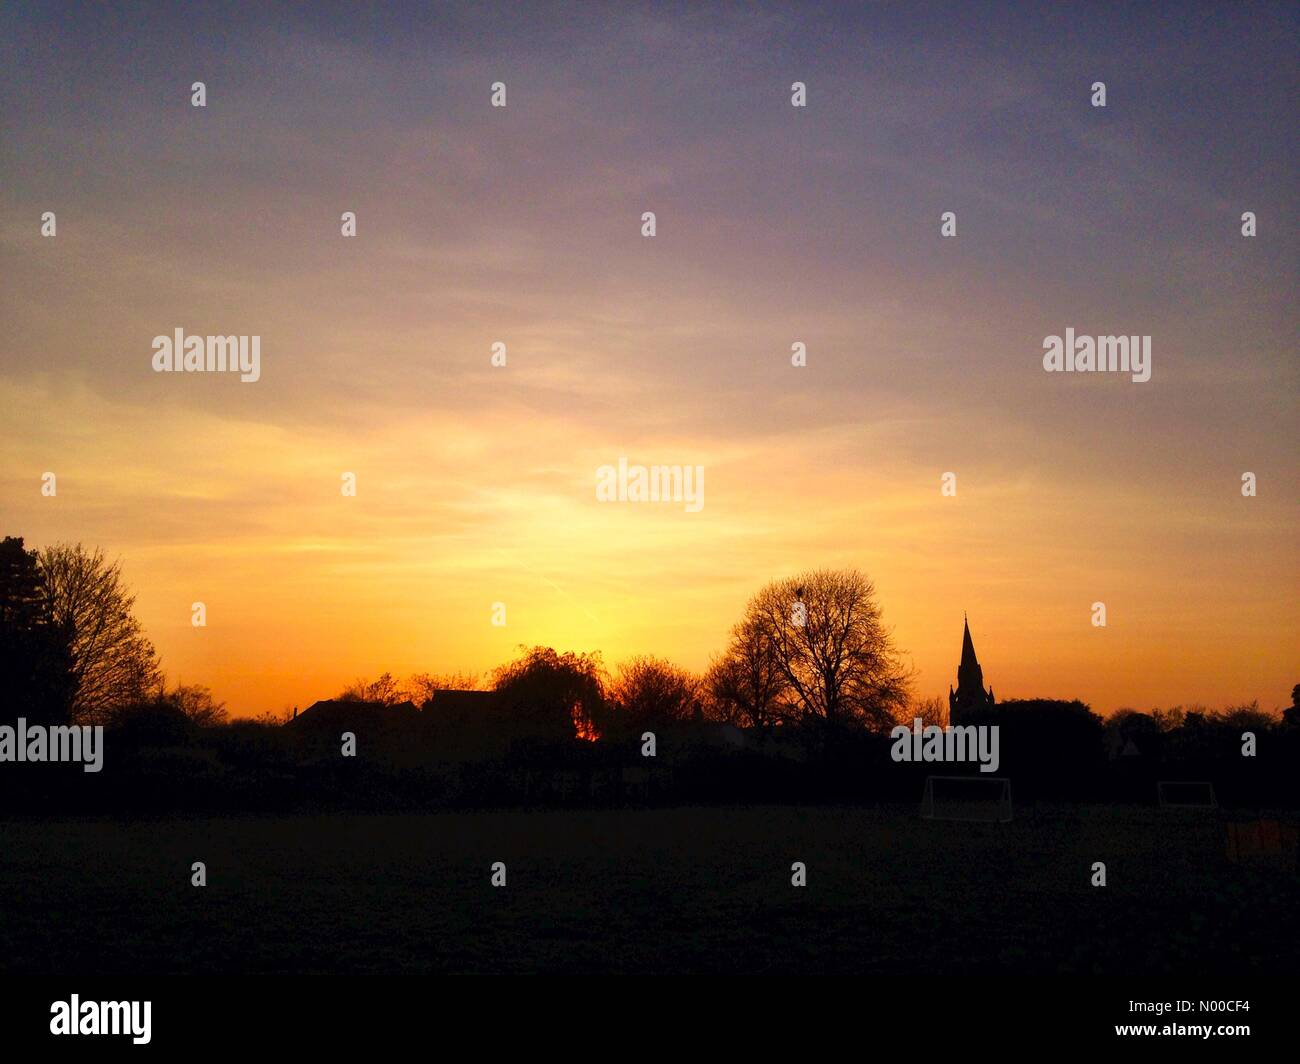 UK-Wetter: Ein Oranges Leuchten wie die Sonne am Himmel über Reading, UK  untergeht Stockfotografie - Alamy